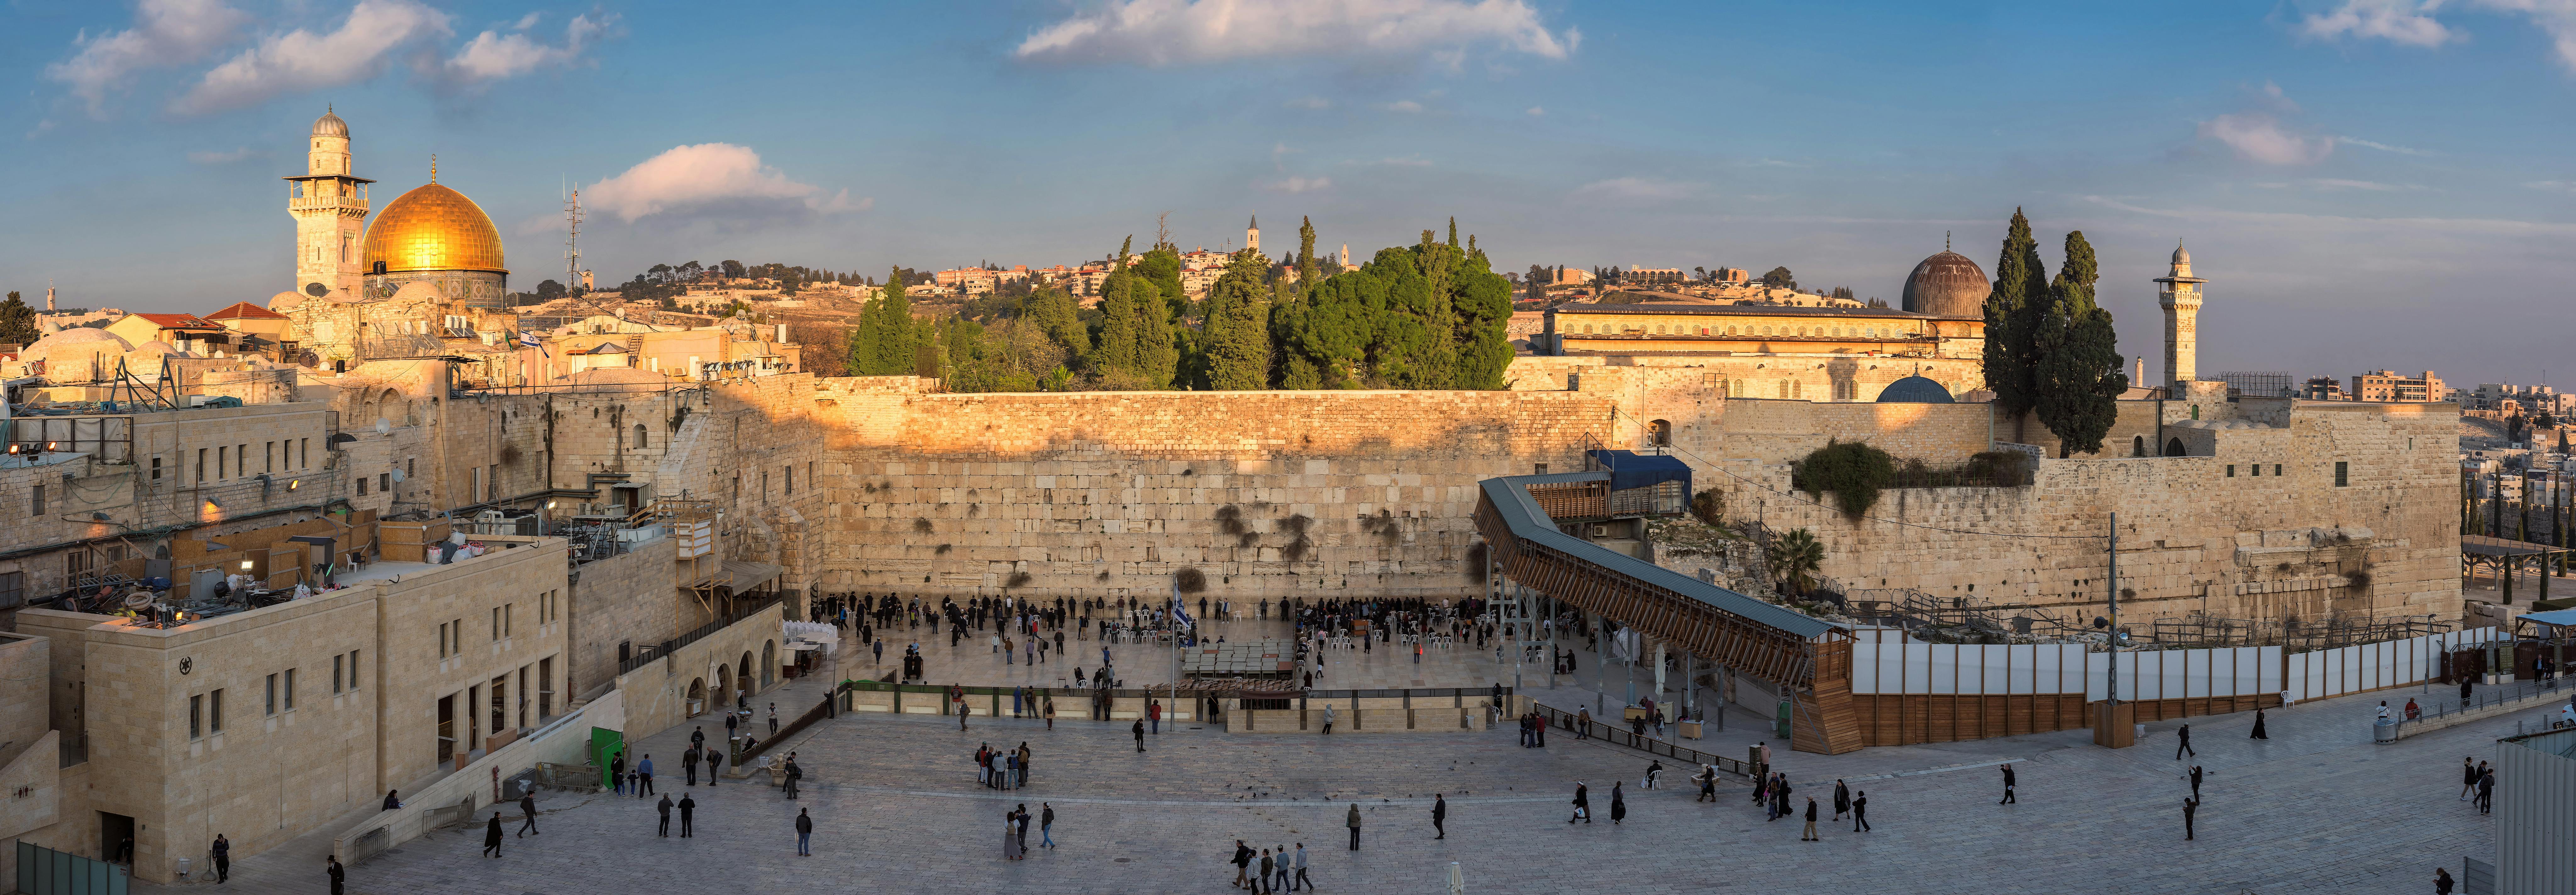 Ganztägige Tour durch das historische und moderne Jerusalem ab Tel Aviv